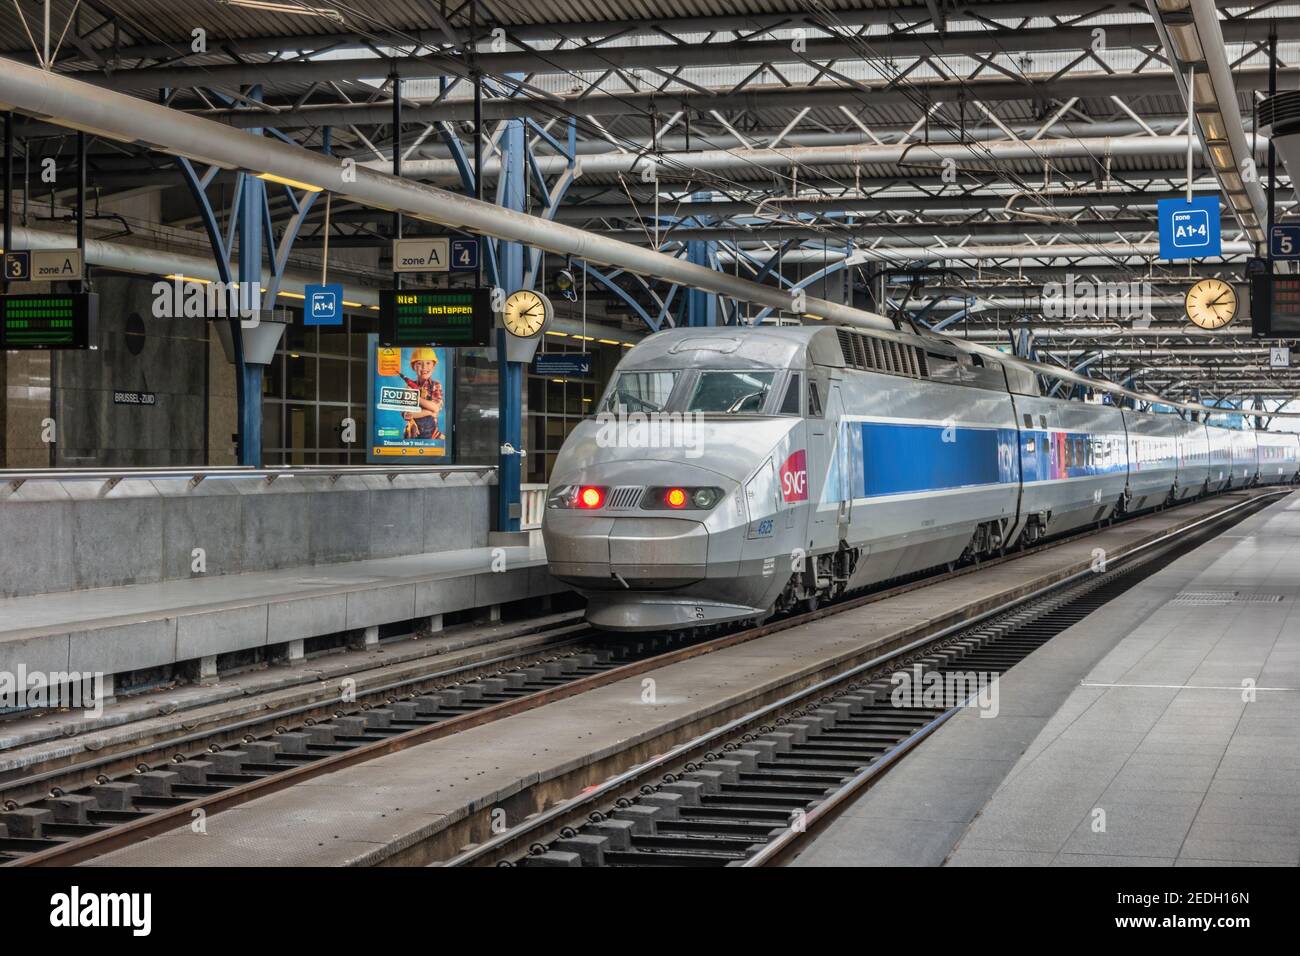 Bruxelles, Belgio - 8 maggio 2017: Treno ad alta velocità alla stazione ferroviaria di Bruxelles Sud (Bruxelles Midi) la stazione più grande della città di Bruxelles Foto Stock